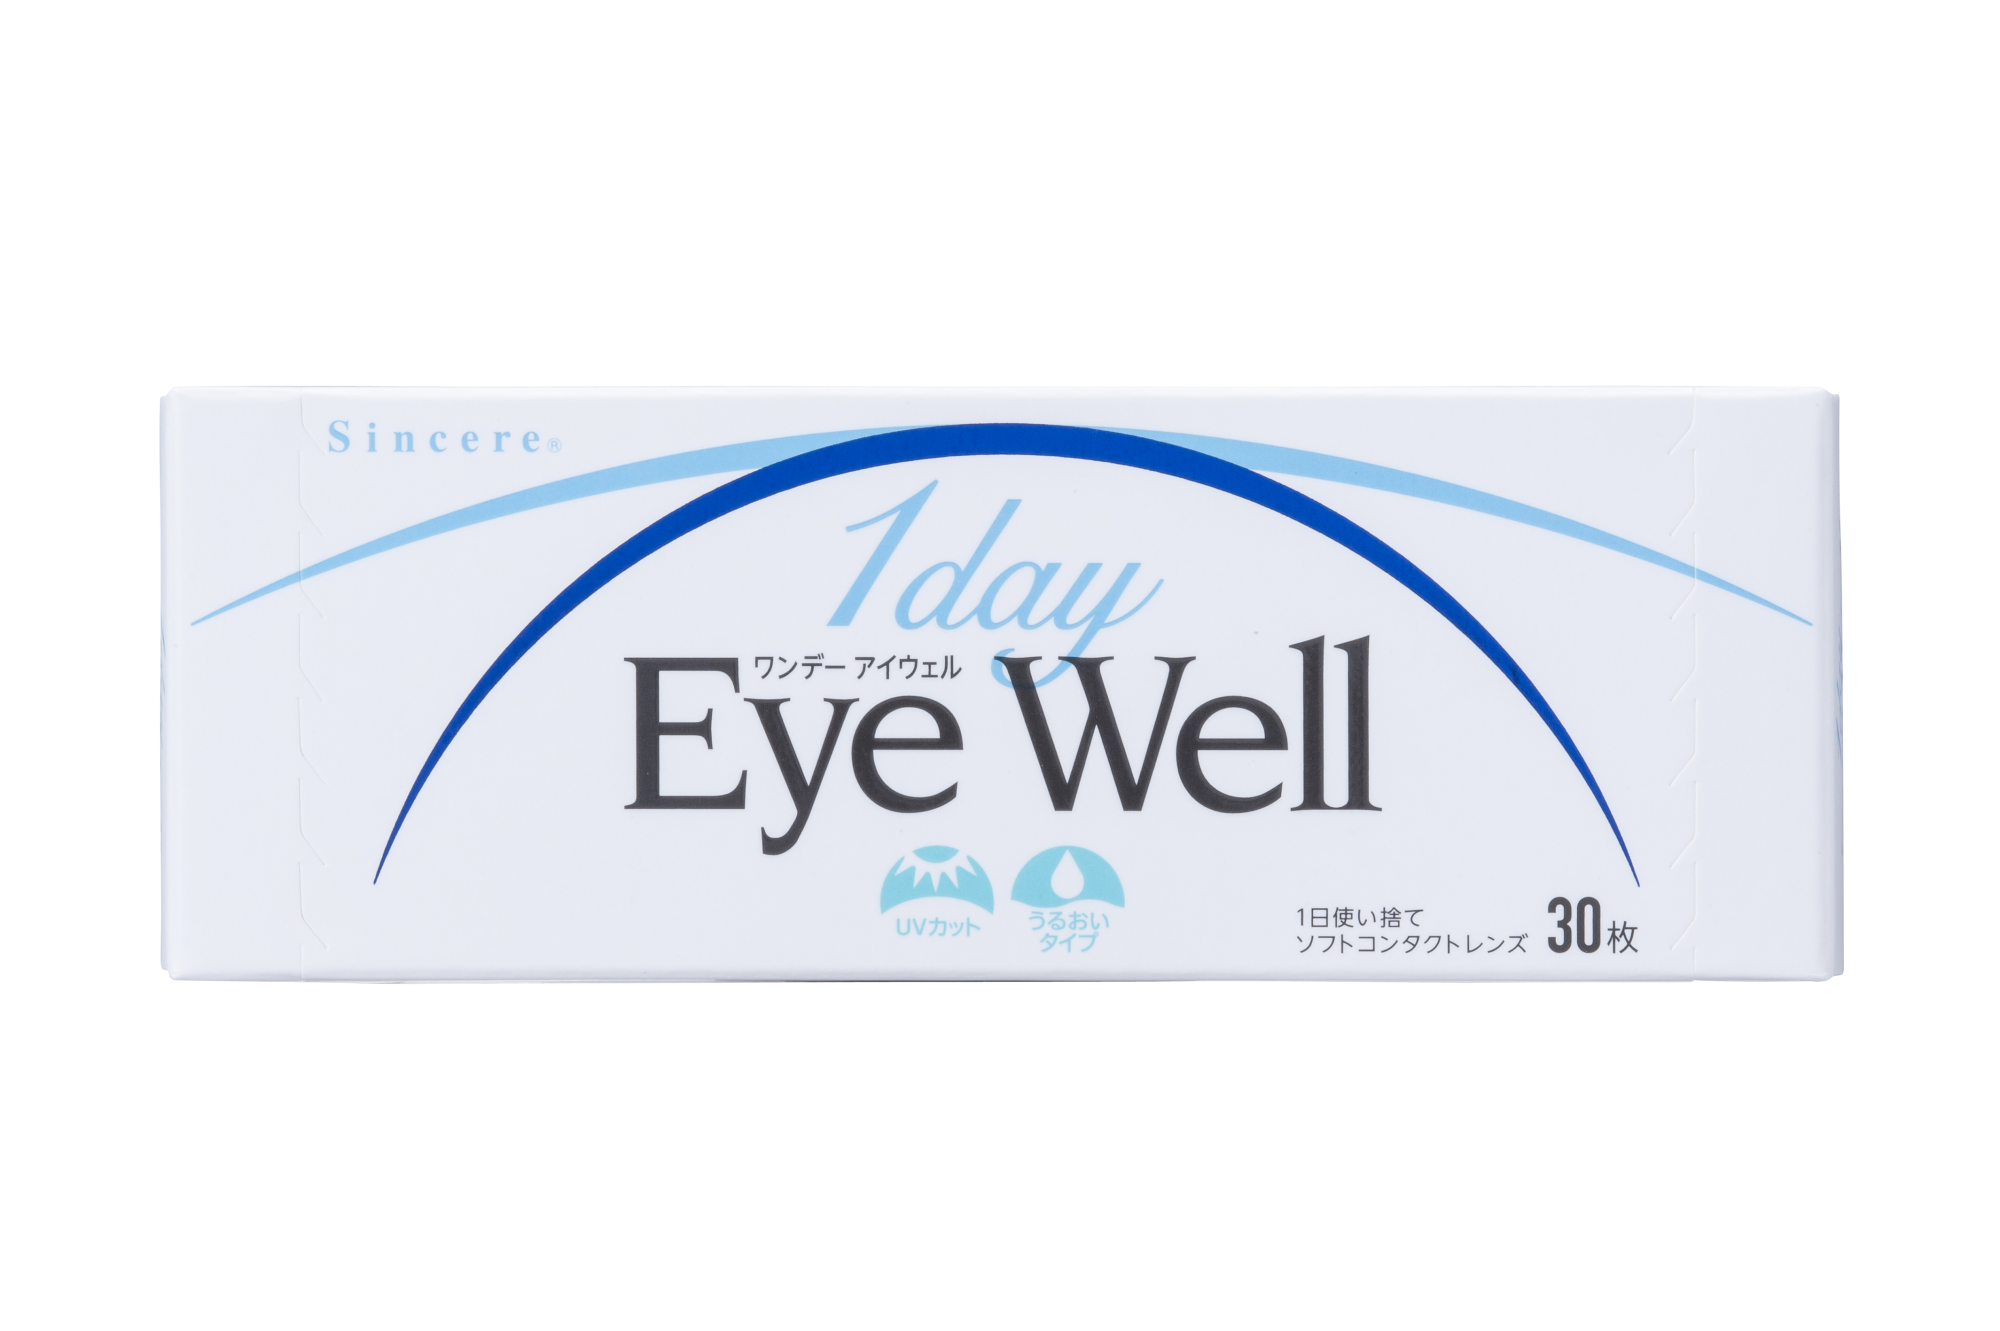 「1day Eye Well（ワンデー アイウェル）」宮城県内 一部ドラッグストアにて先行販売開始 | sincere